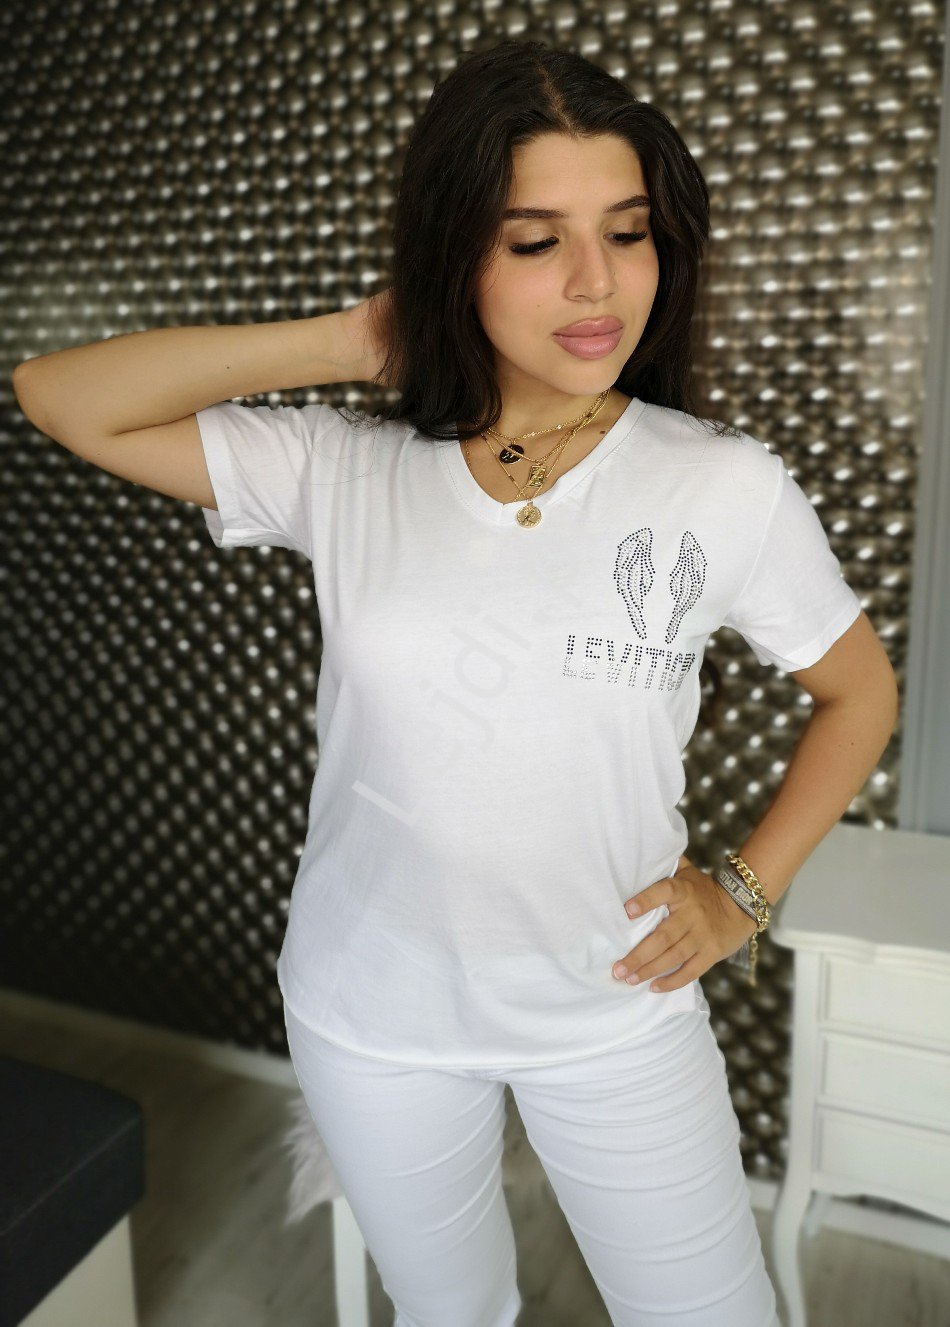 Biały t-shirt damski leviticus z skrzydłami kryształkowymi na plecach